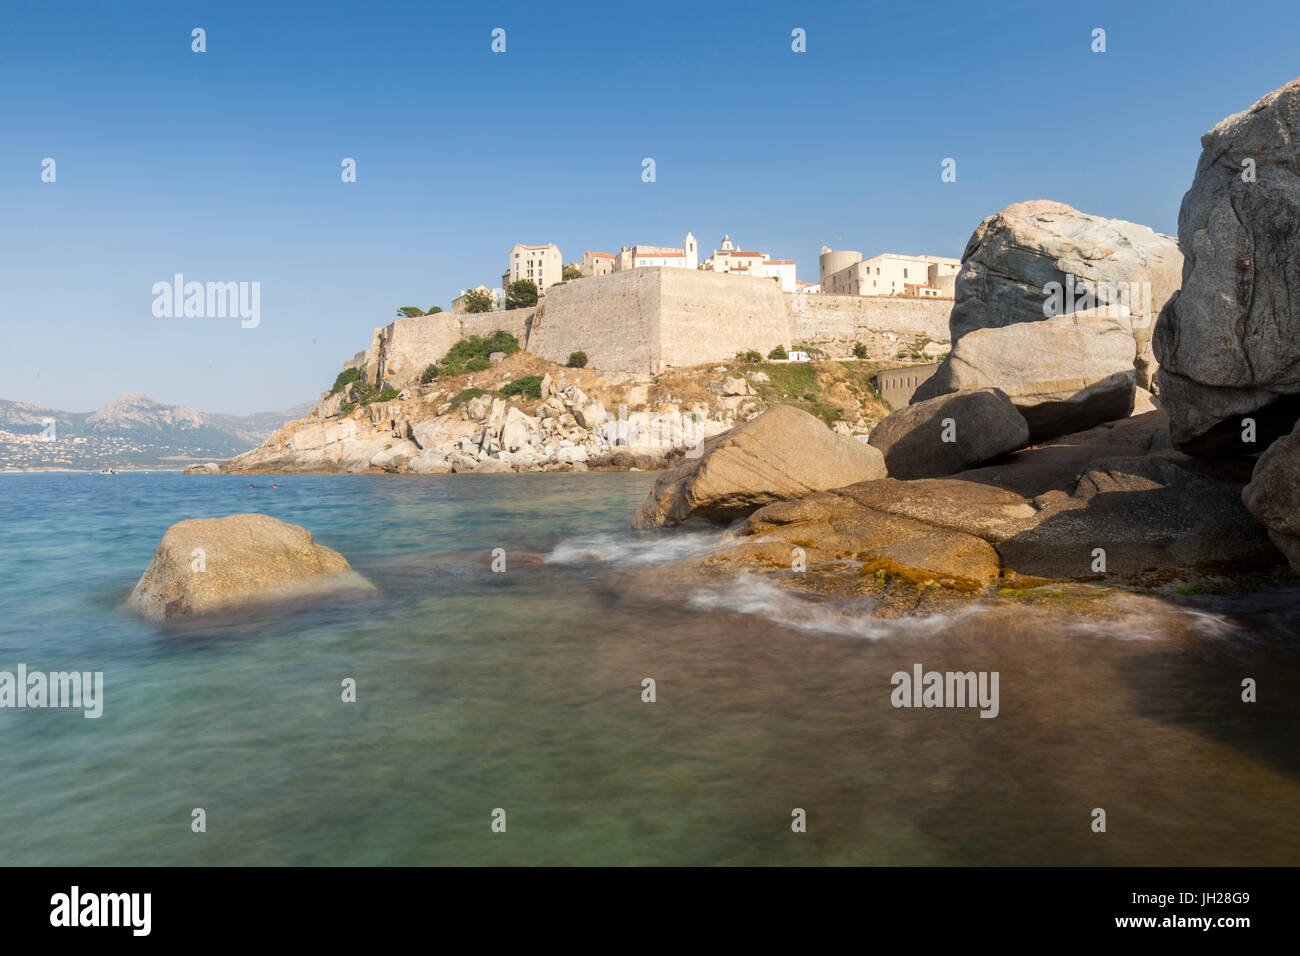 L'ancienne citadelle fortifiée sur le promontoire entouré par la mer, Calvi, Balagne, Corse, France, Méditerranée Banque D'Images